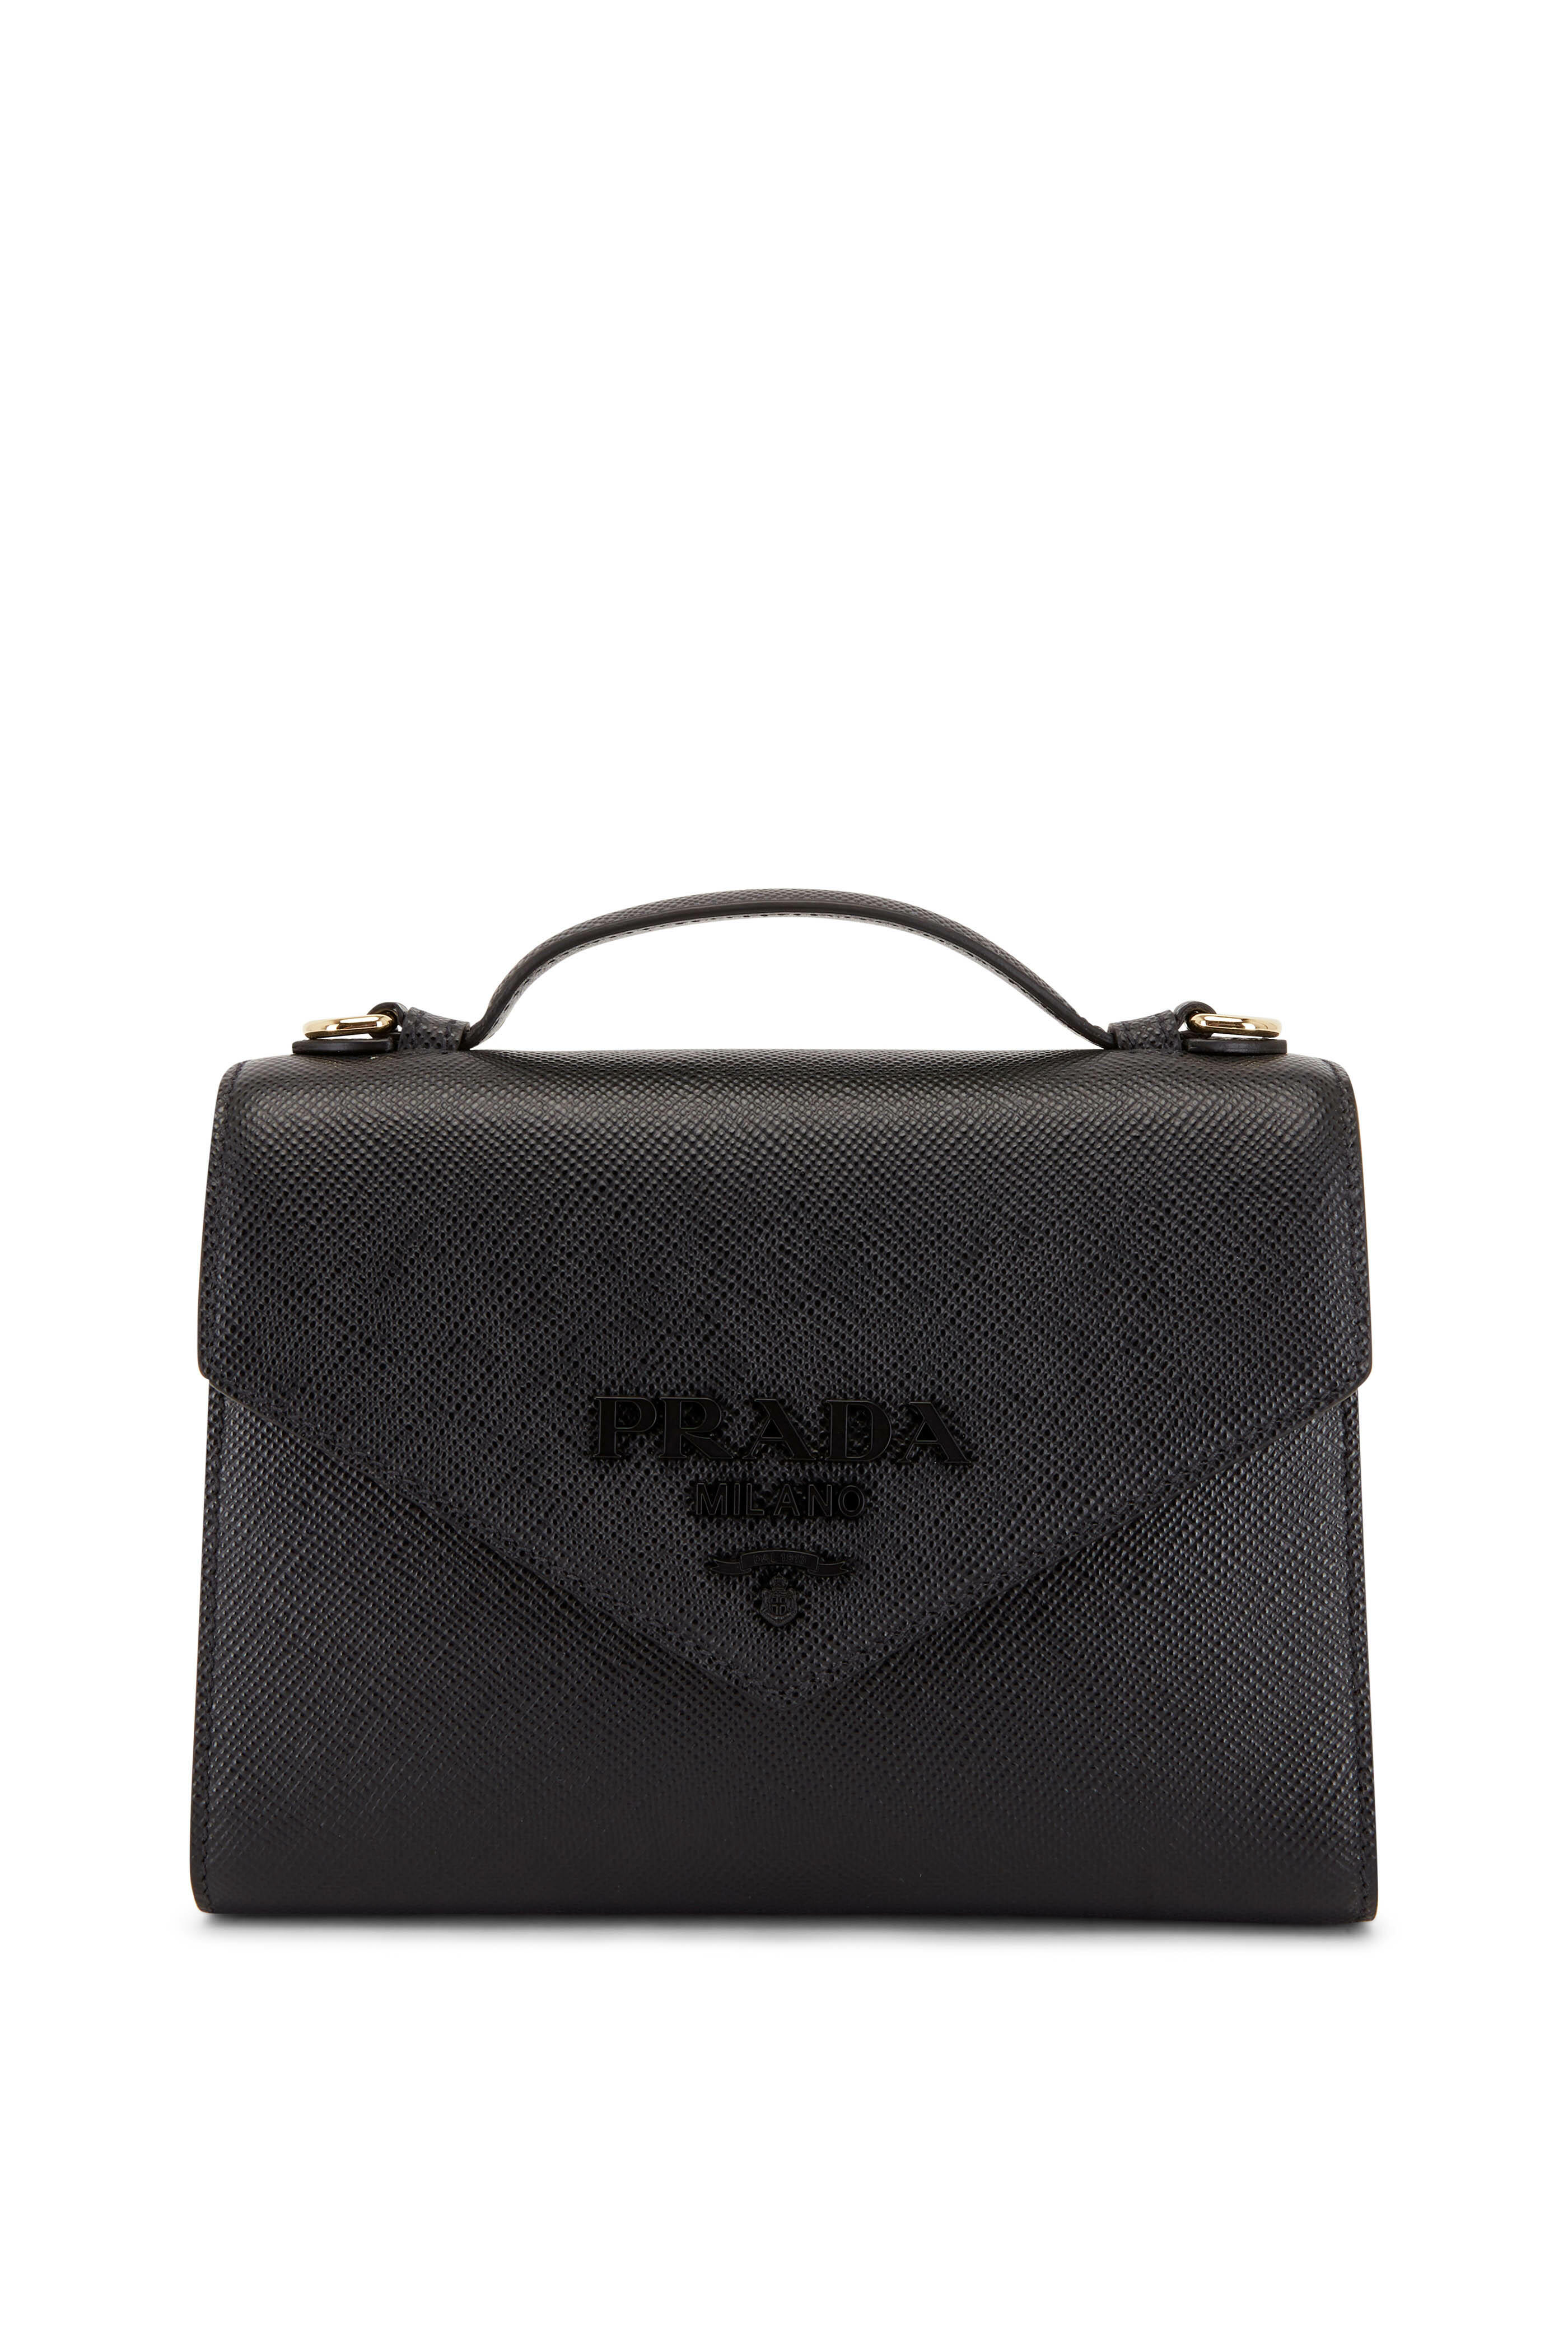 Prada - Black Saffiano Leather Shoulder Bag